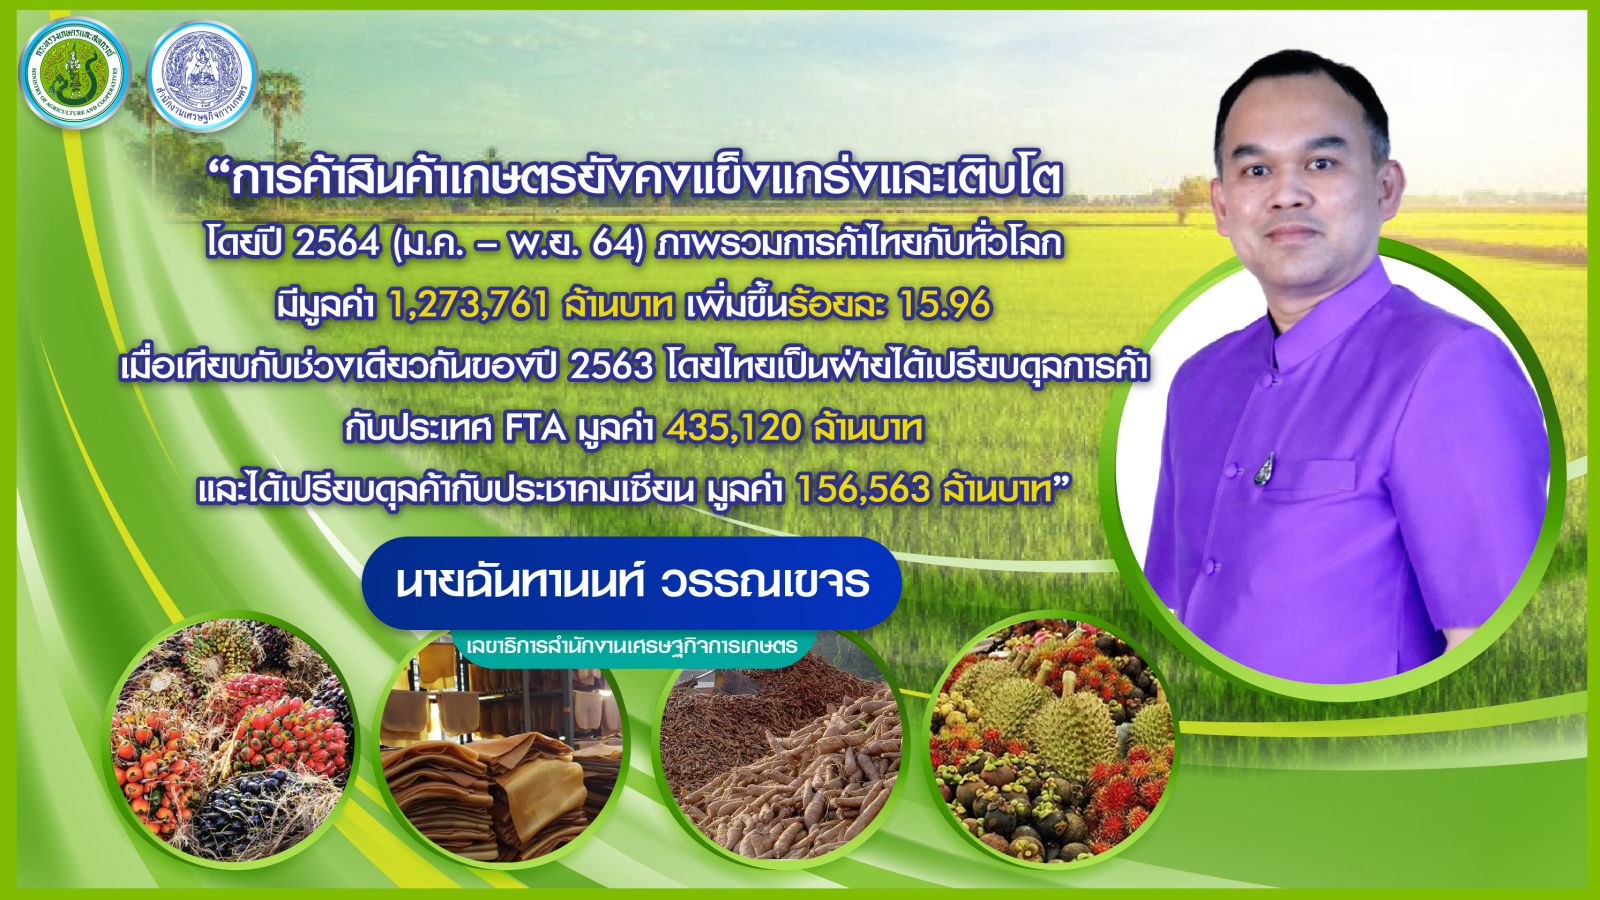 สินค้าเกษตรไทยยังแข็งแกร่งในตลาดโลก เกษตรฯ เผย ปี 64 ส่งออกยังเติบโต ทั้งคู่ค้า FTA และอาเซียน